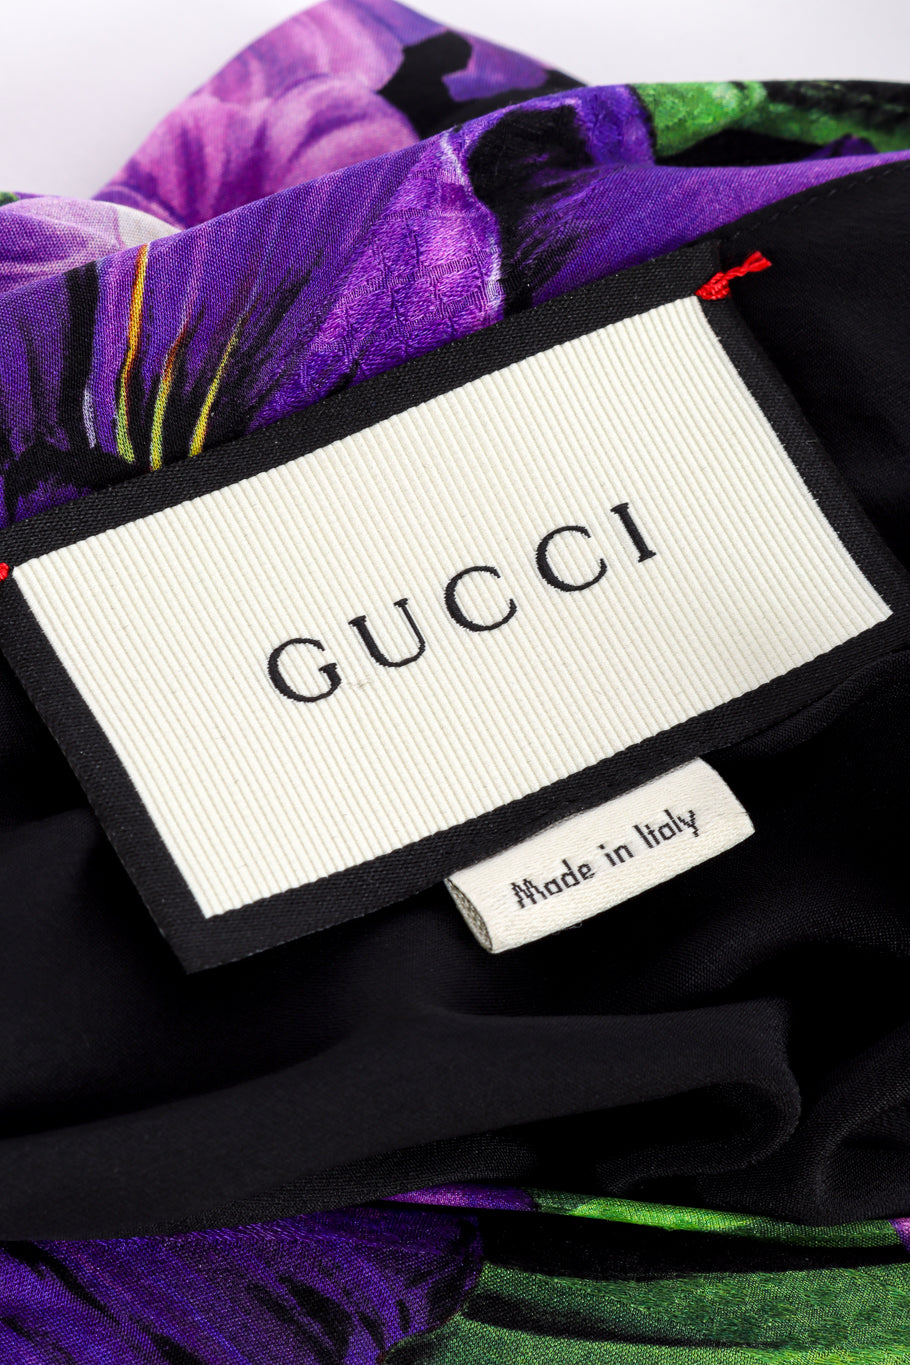 2017 S/S Silk Floral Appliqué Blouse by Gucci label @recessla